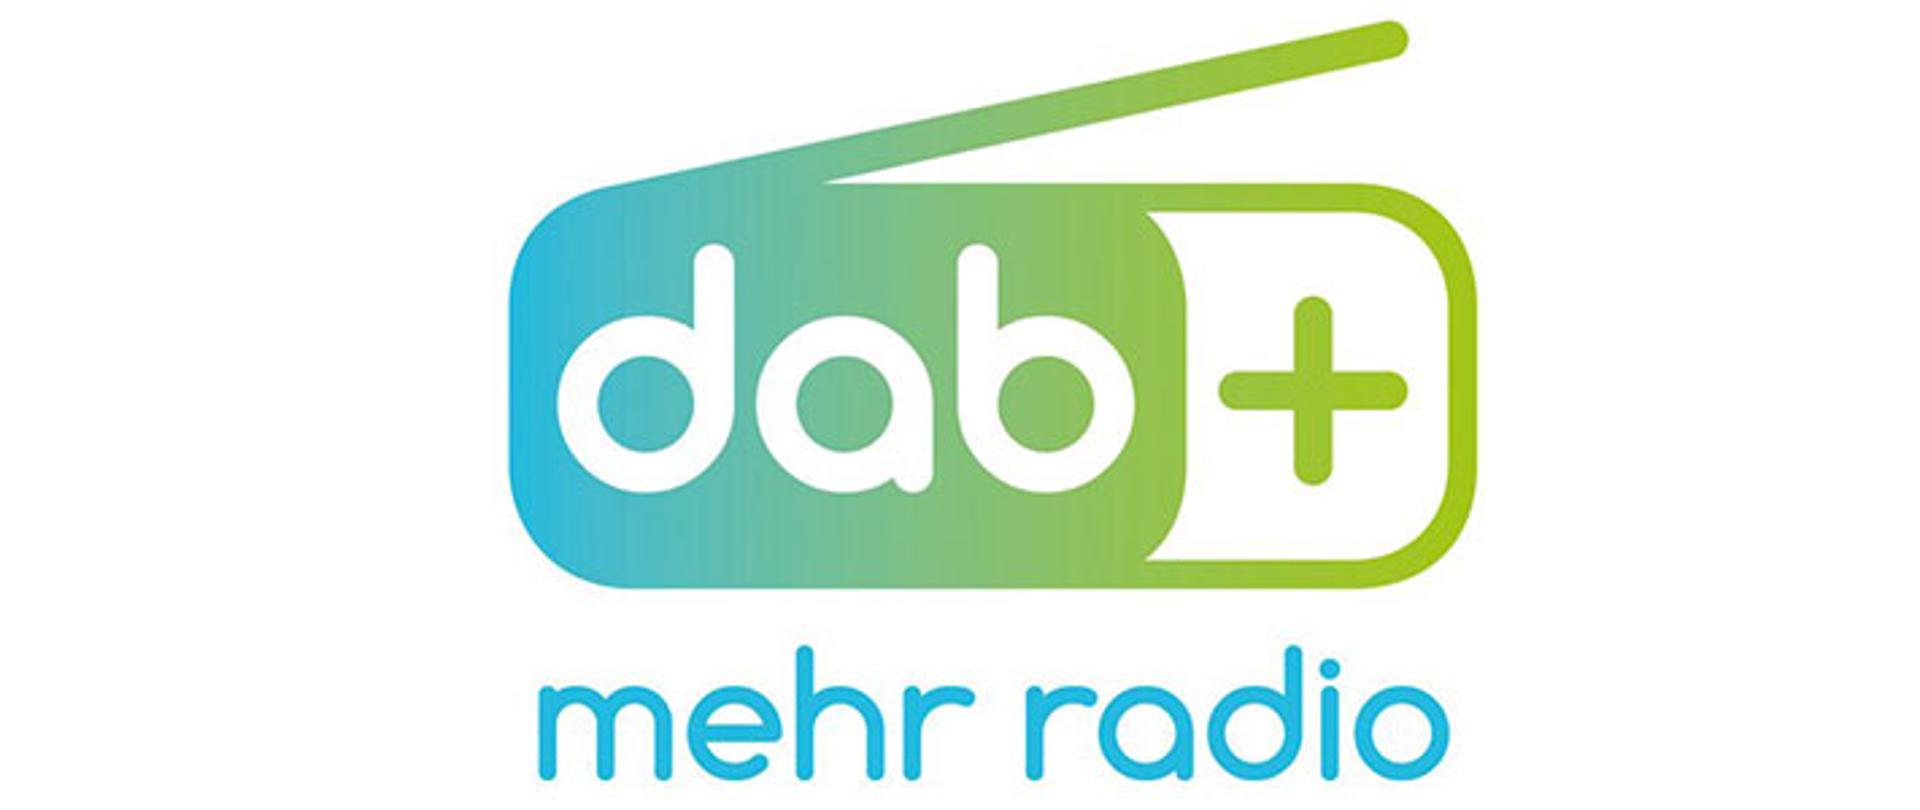 Zielone radio z napisem 'dab+' na białym tle. Poniżej napis "mehr radio"